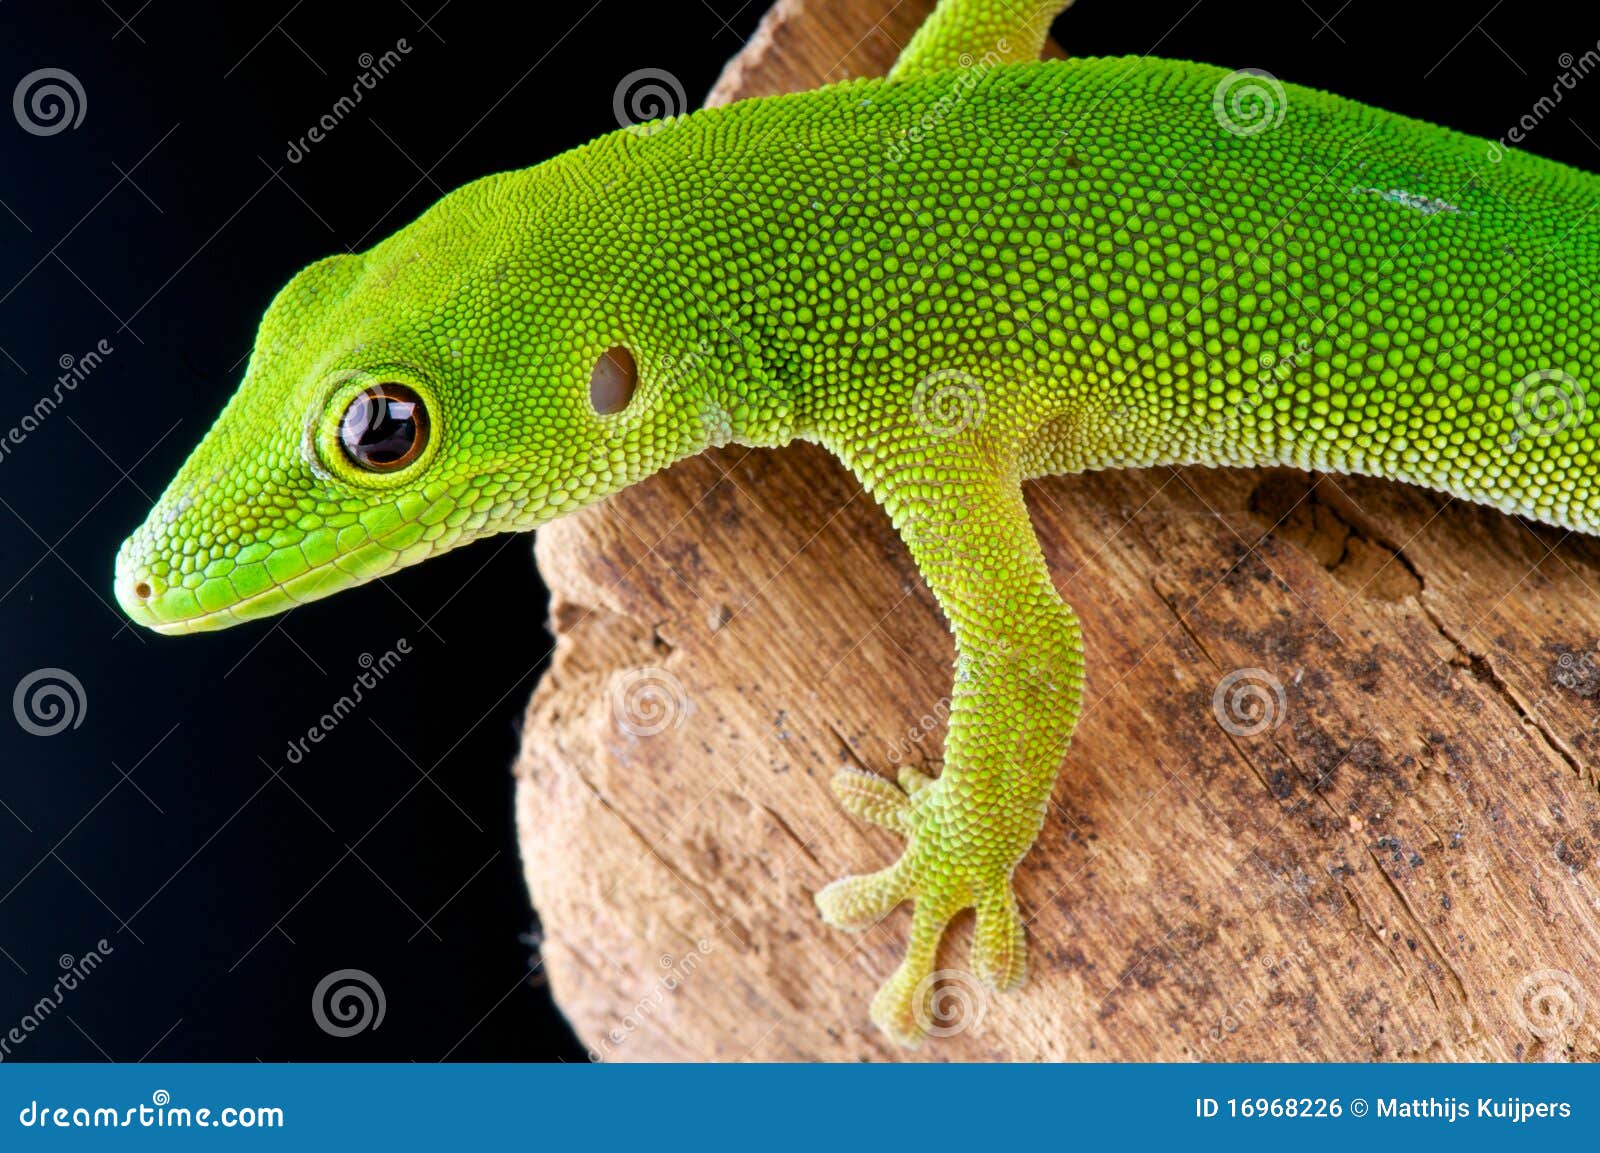 pemba island day gecko